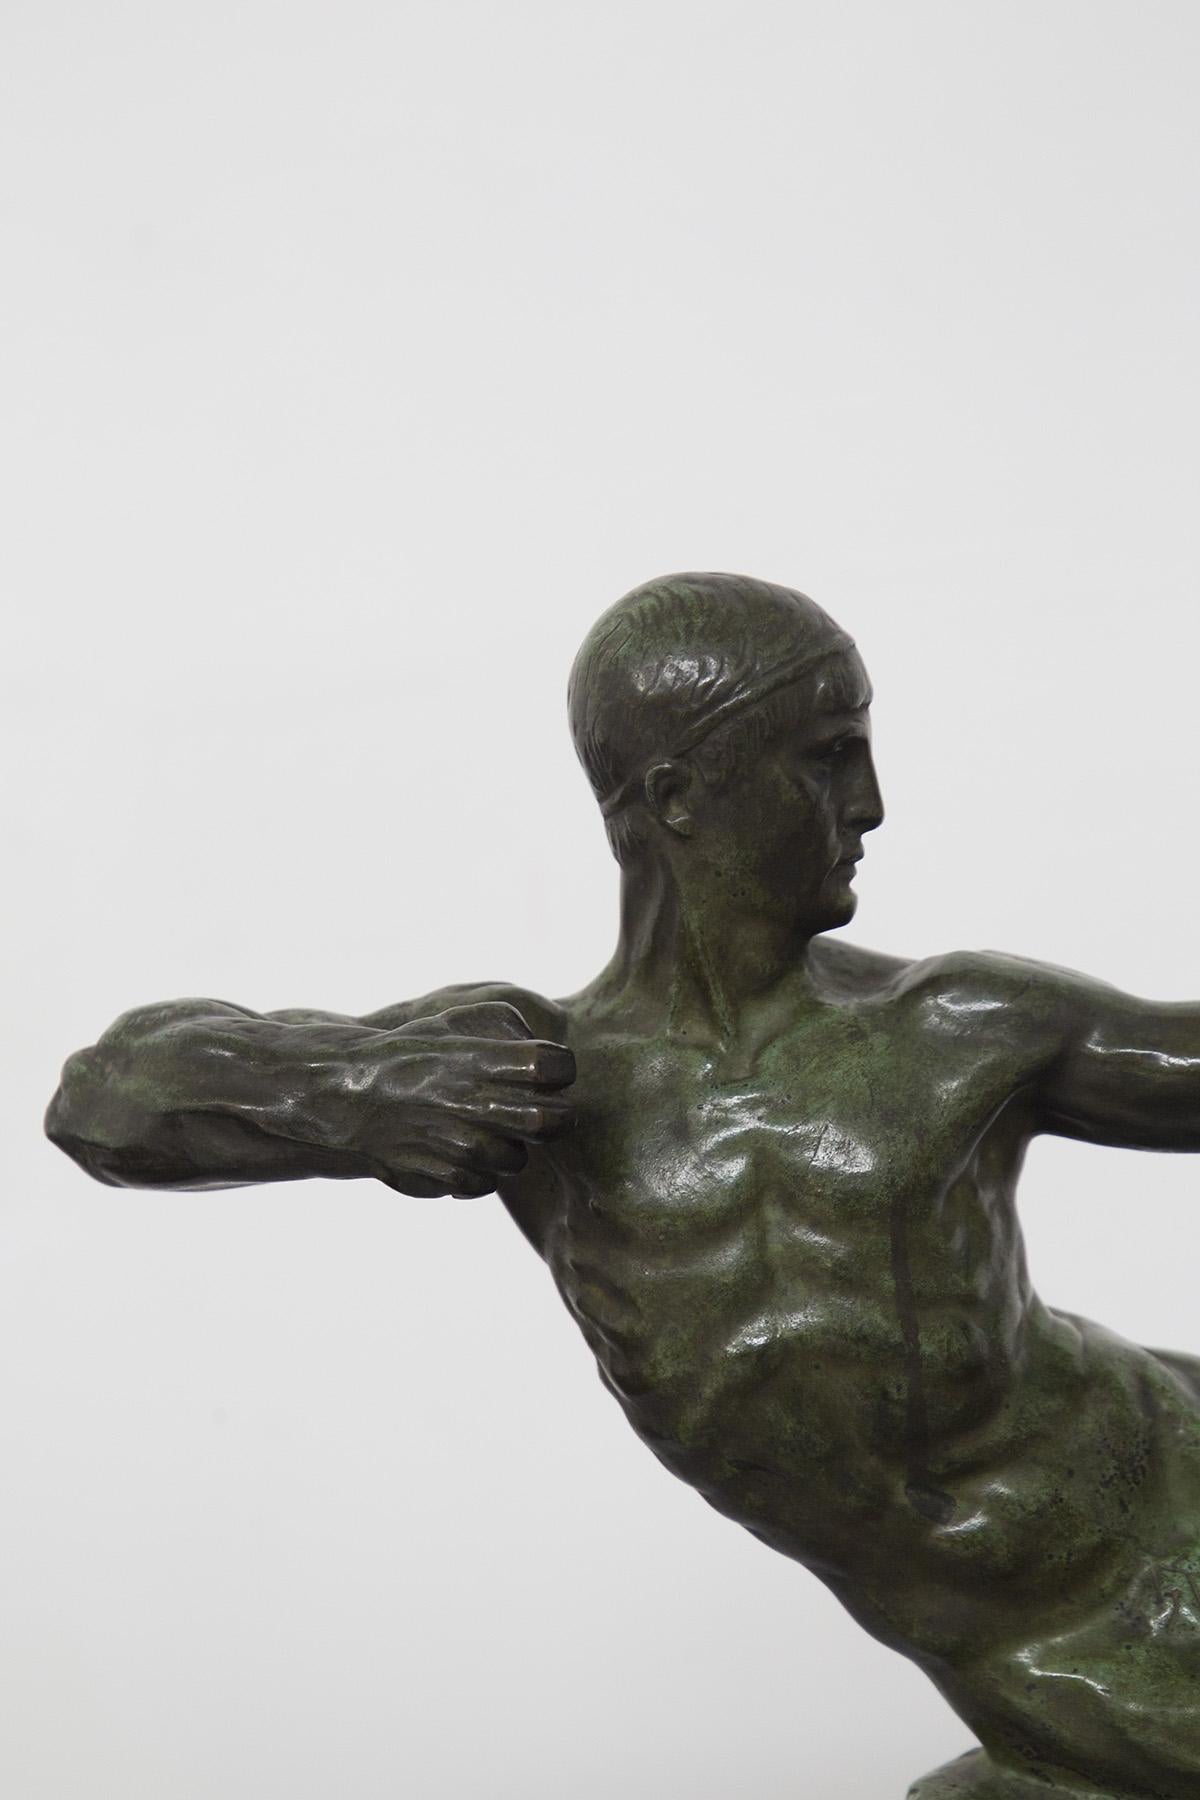 Schöne Art-Déco-Bronzeskulptur des berühmten französischen Künstlers Victor Demanet aus dem Jahr 1925, die einen nackten männlichen Bogenschützen darstellt. Hochwertige Bronze mit schöner grünlicher Bronzepatina. SIGNIERT UND GEBRANDMARKT.
Der